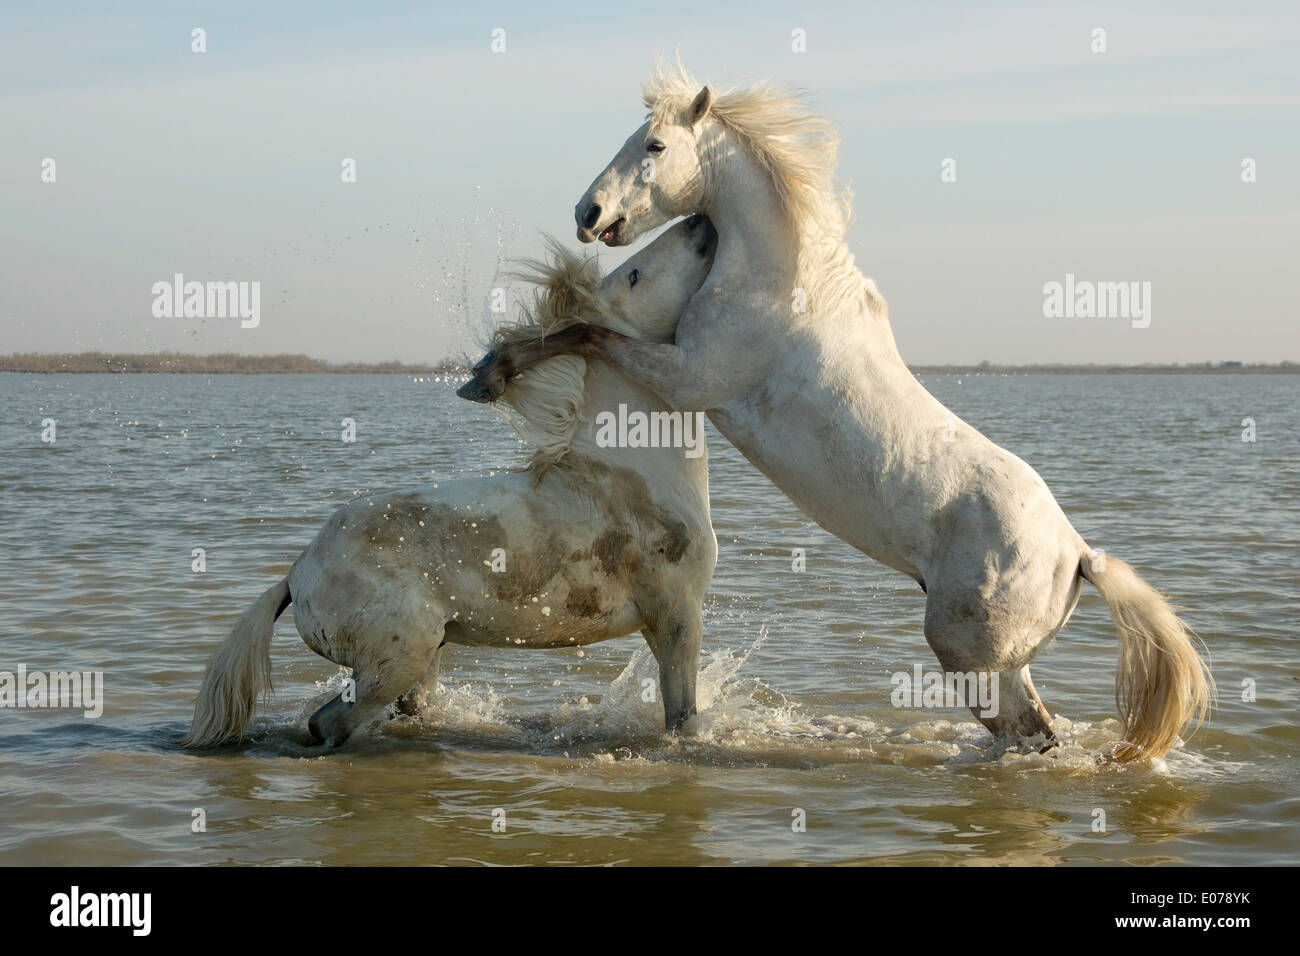 Caballos de Camargue, sementales, sparring en el agua Foto de stock